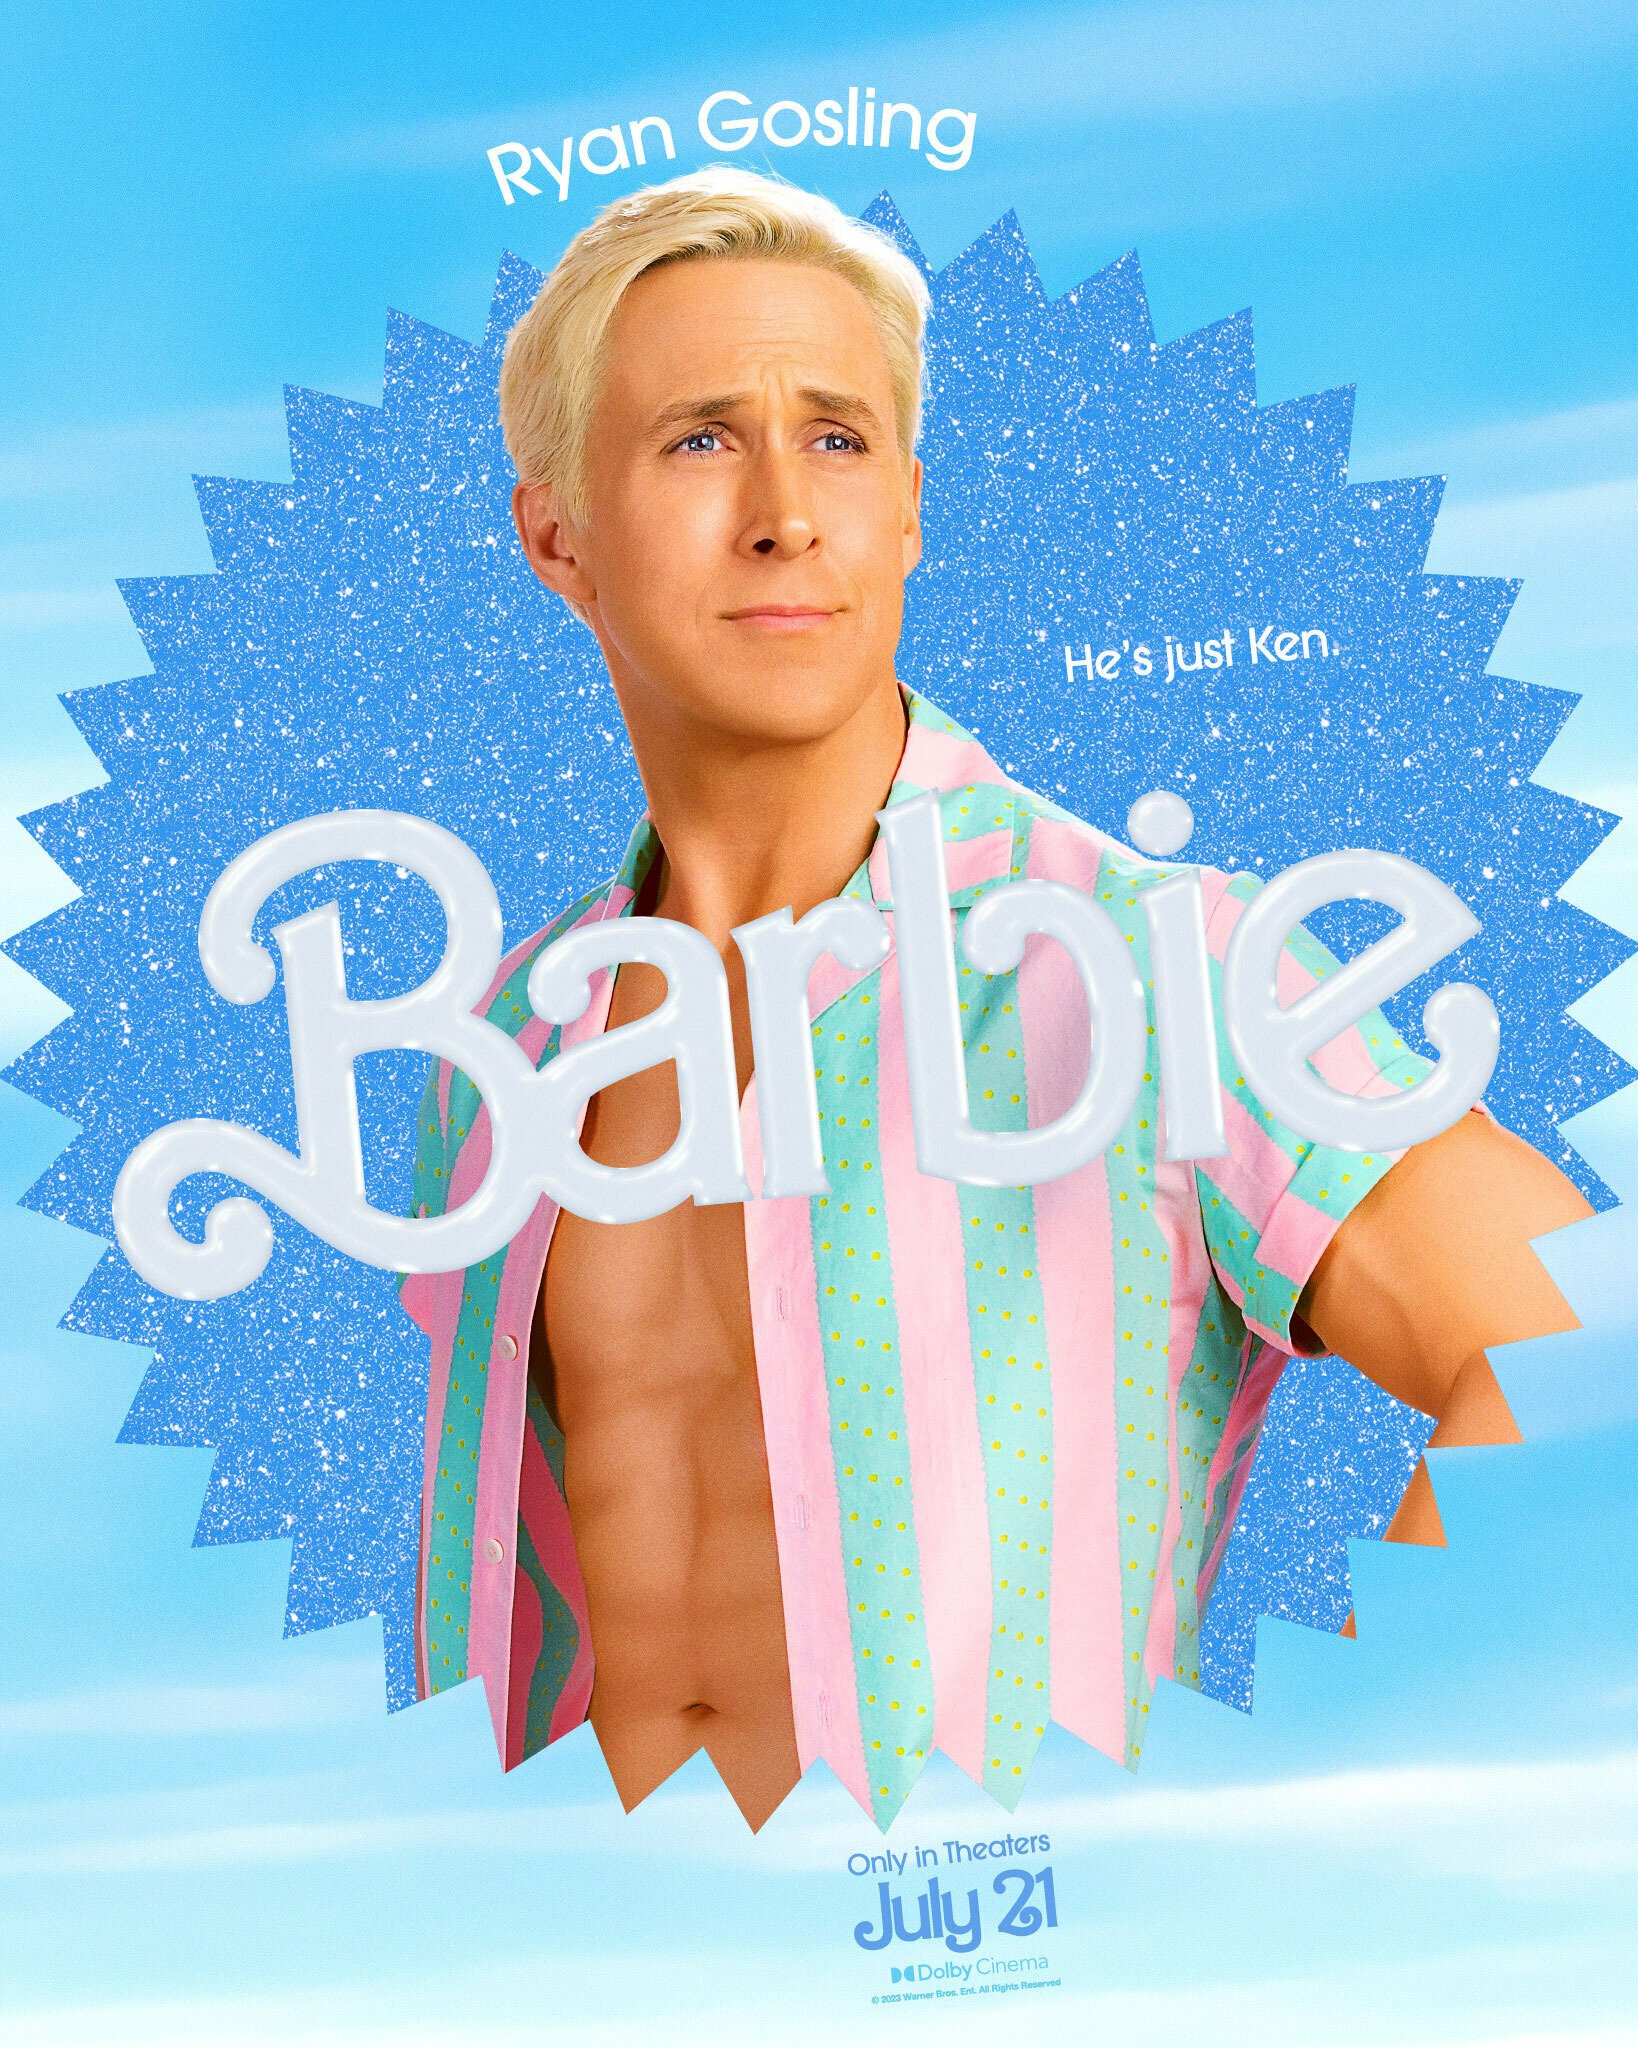 Когда фильм «Барби» выйдет в кино в России и почему он такой популярный,  когда «Барби» с Марго Робби и Райаном Гослингом покажут в России, можно ли  посмотреть Барби в России, кто такая